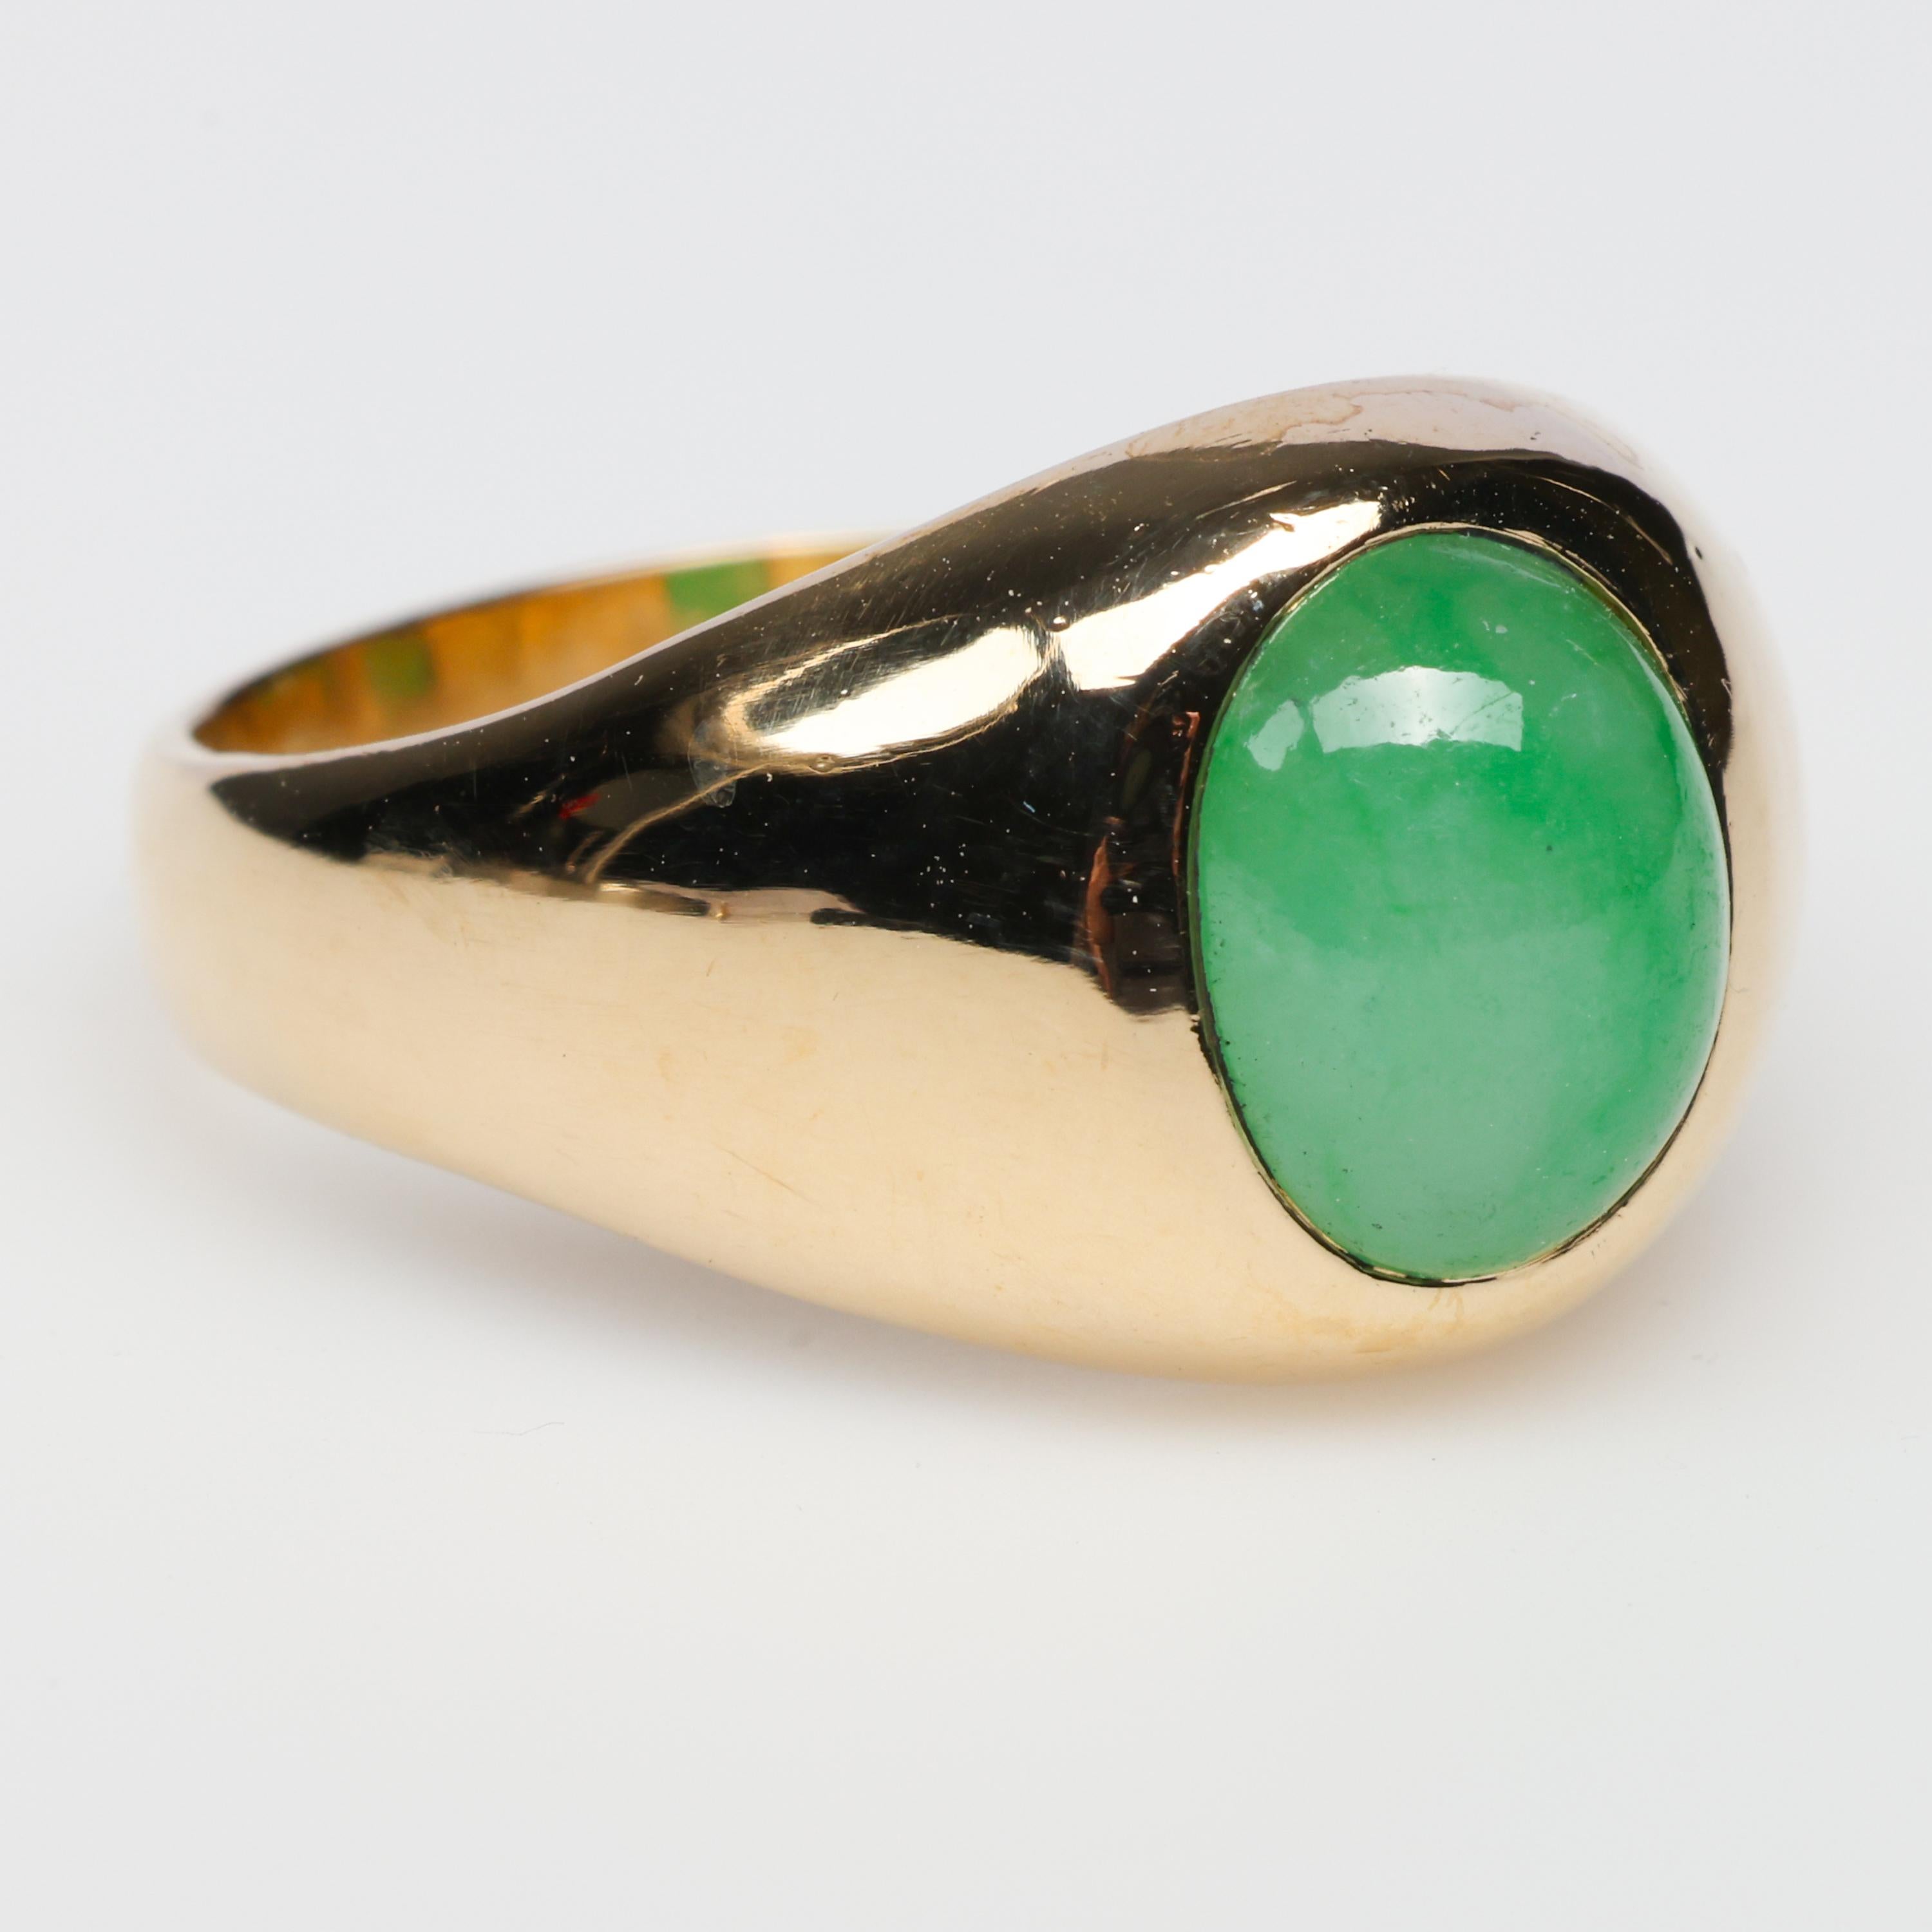 Dieser antike Ring aus 14-karätigem Gelbgold zeigt einen leuchtend grünen Cabochon aus natürlicher und unbehandelter apfelgrüner Jade.  Der Färbestein misst 8,8 x 7,5 x 3,92 mm und ist durchscheinend und leicht gesprenkelt. Der klassische Stil